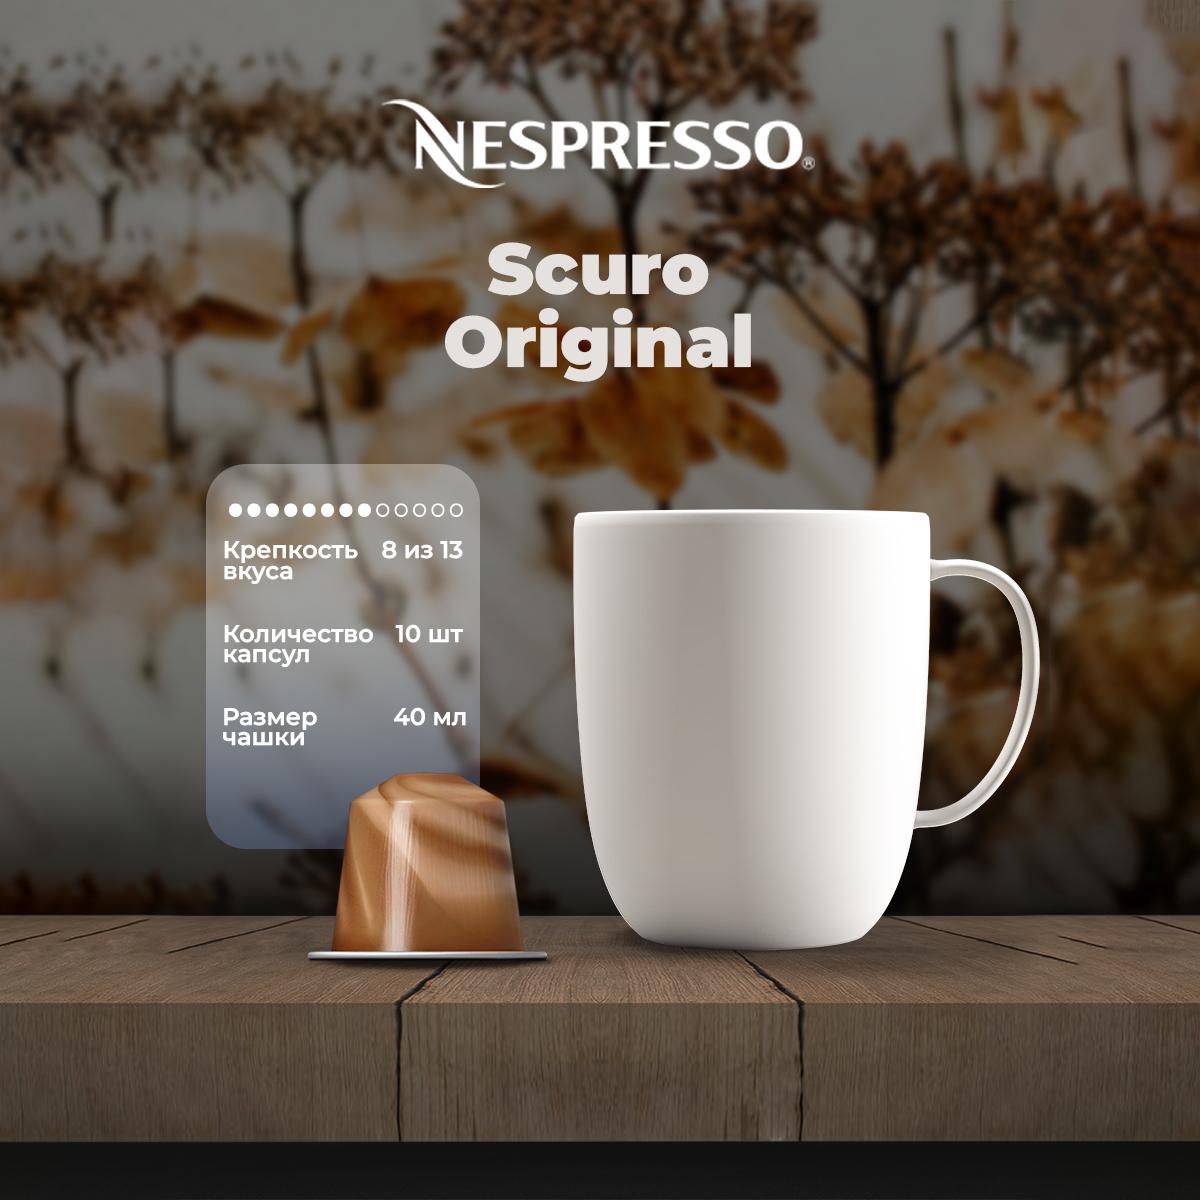 Кофе в капсулах Nespresso Original Scuro